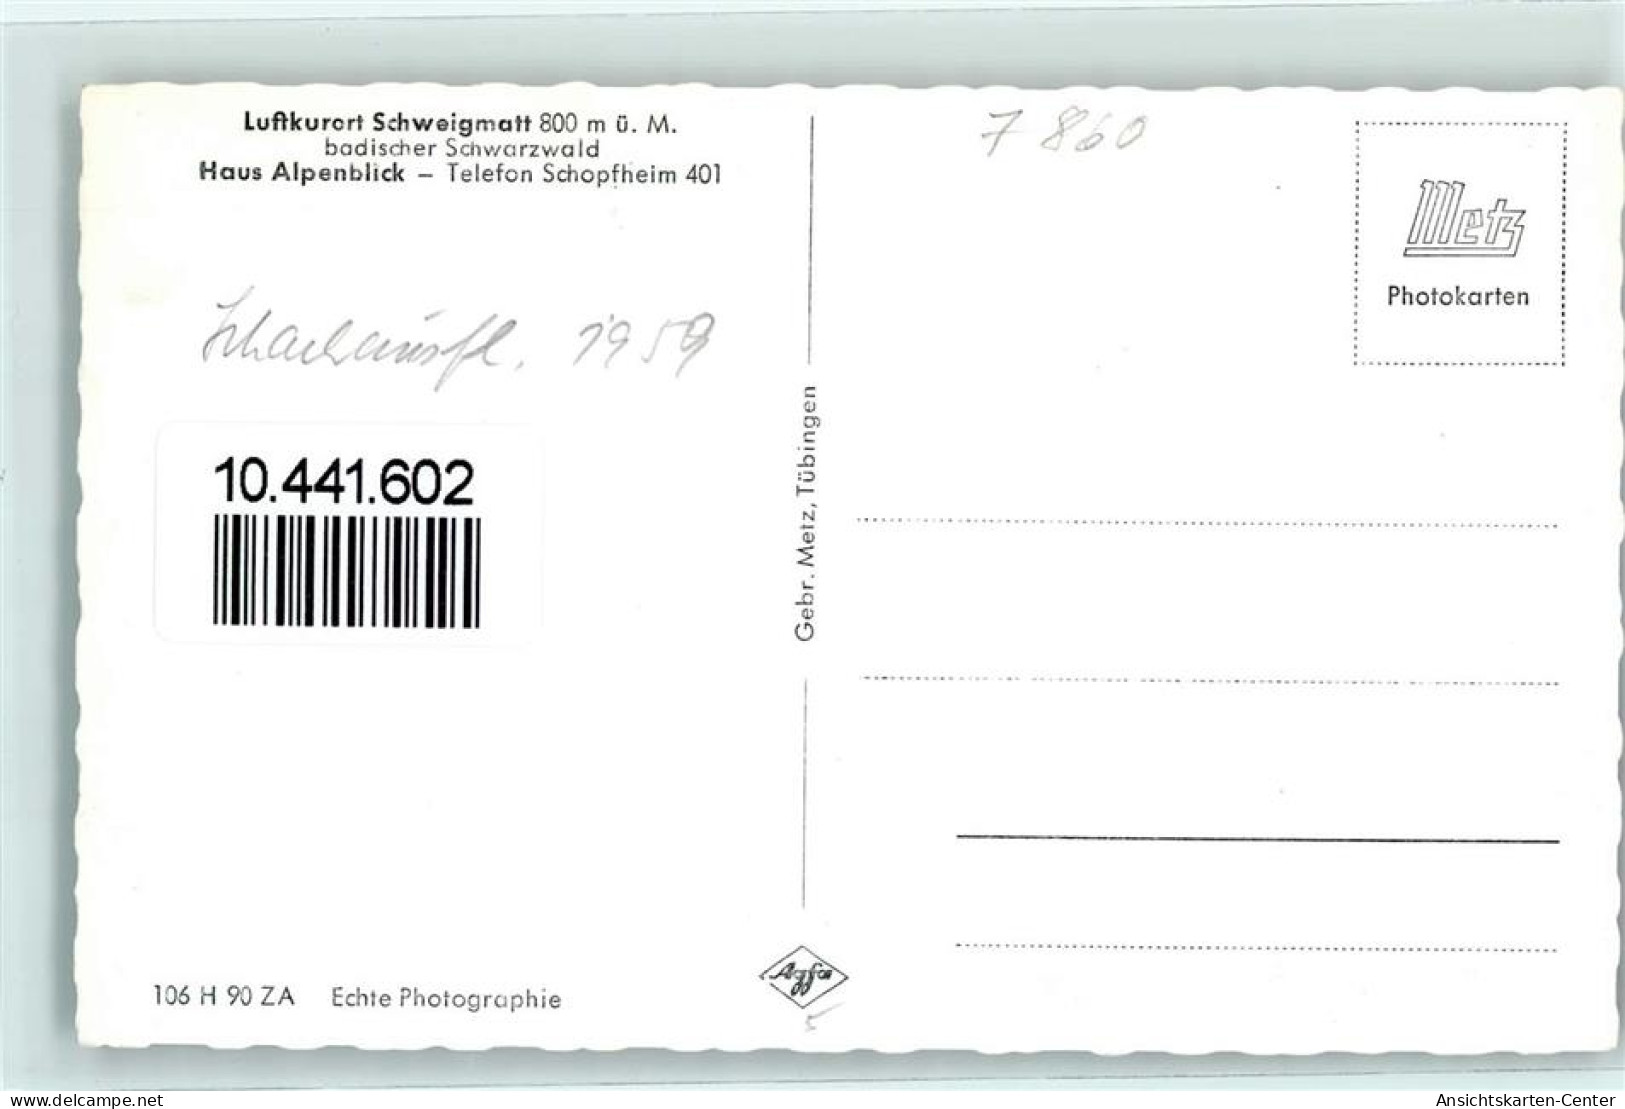 10441602 - Schweigmatt - Schopfheim